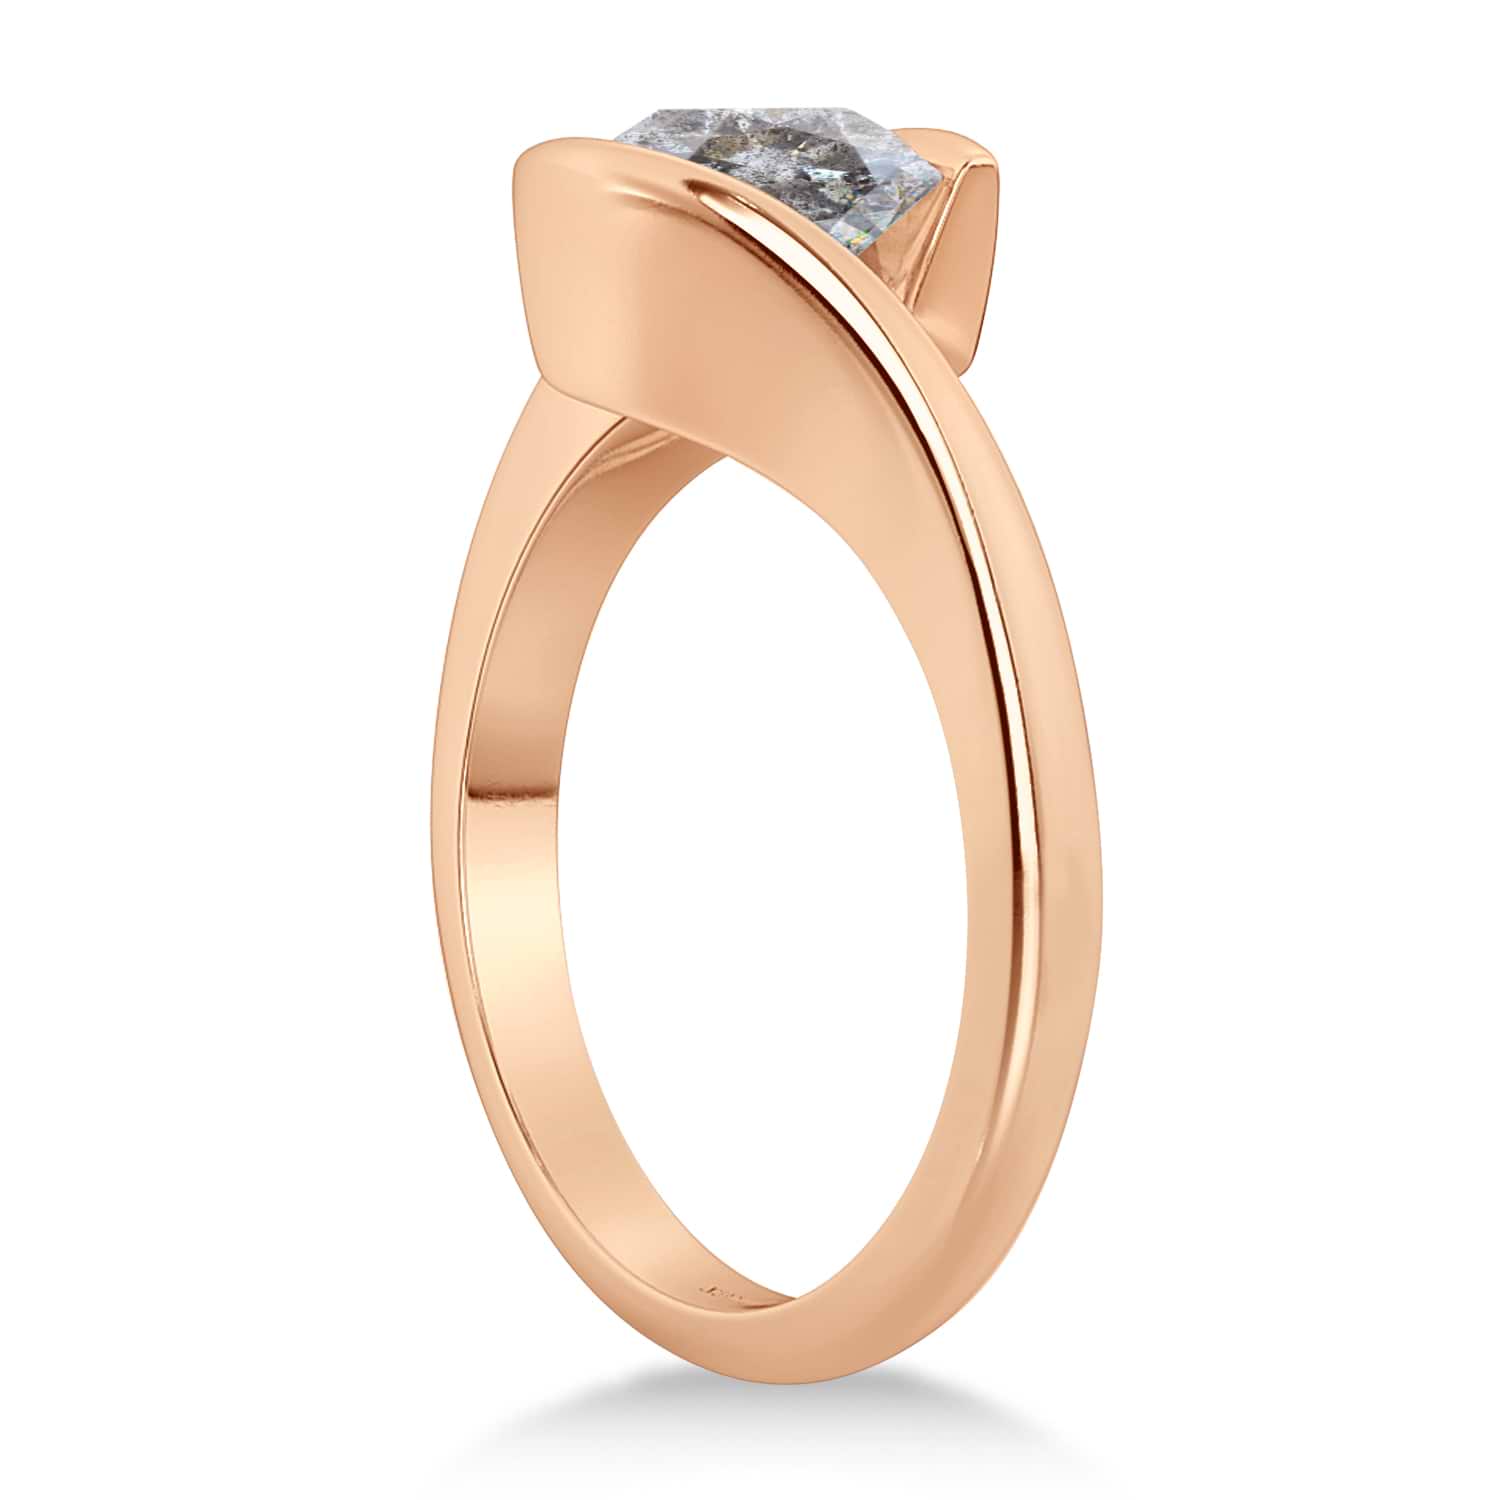 Tension Ring TR-160 - Diamond Brokers & Jewelry of Los Altos